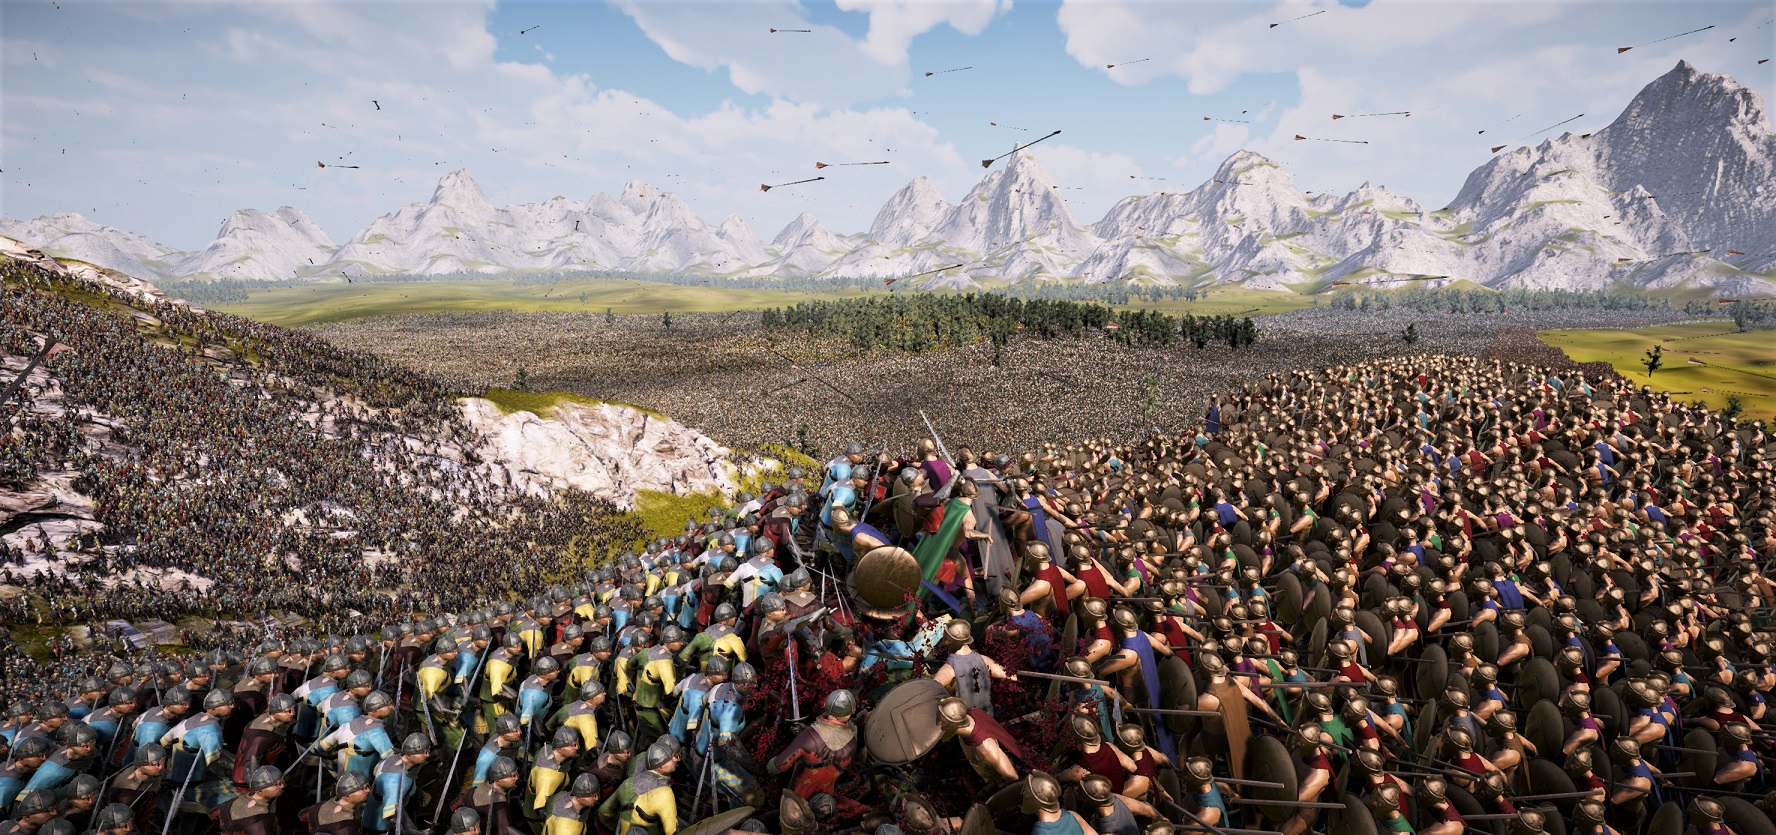 В Steam вышел симулятор масштабных сражений, где могут участвовать миллионные армии